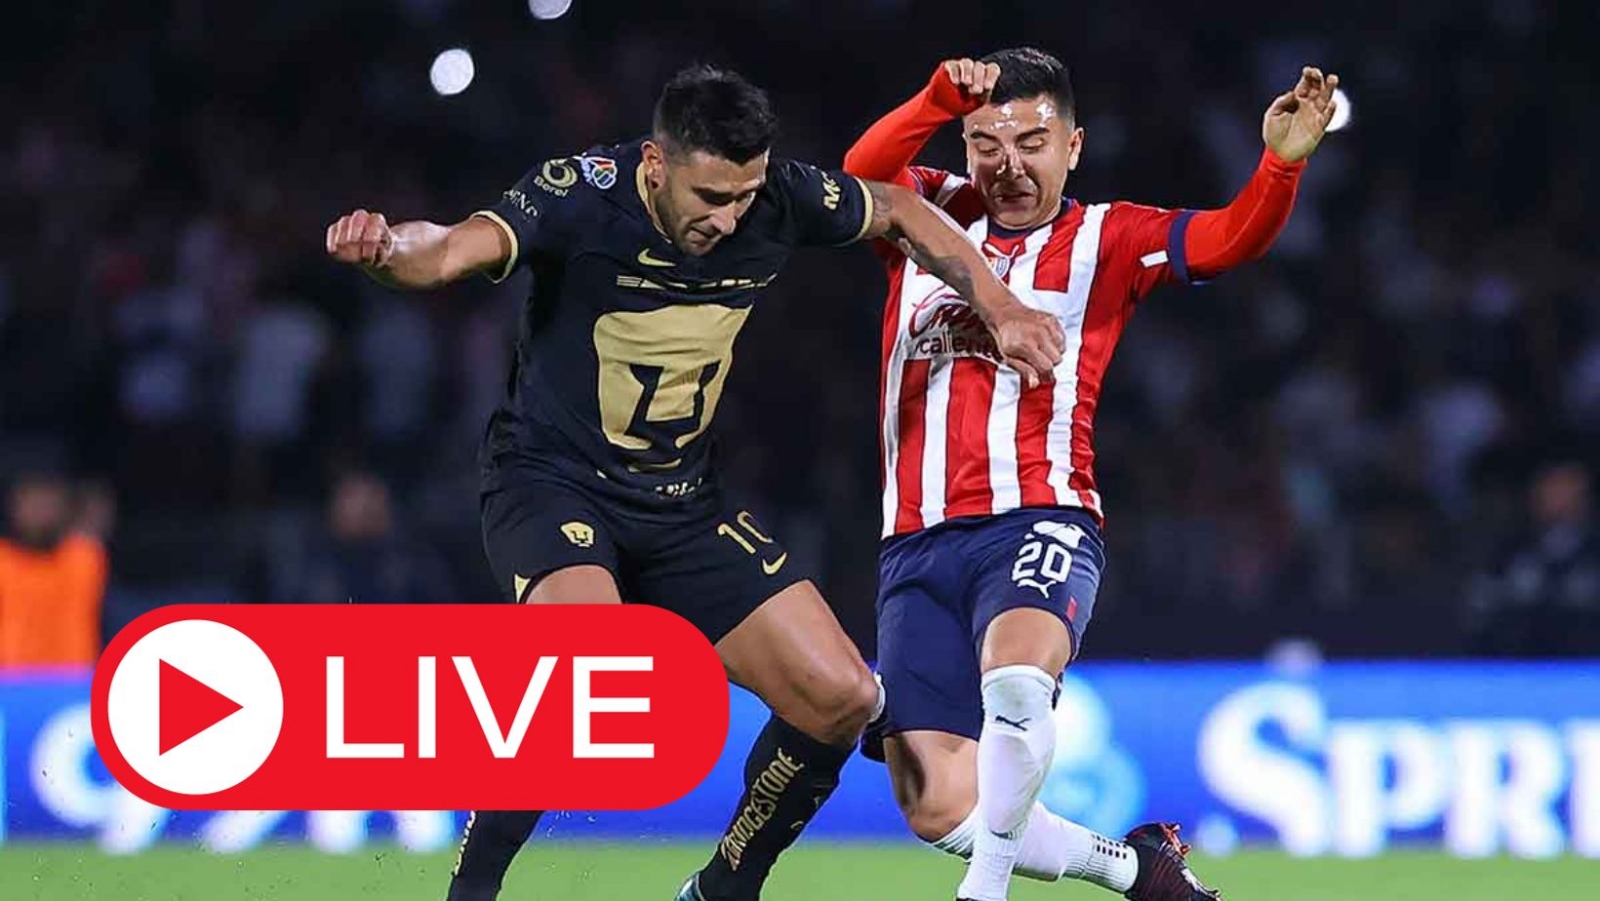 Ver en vivo y online Pumas vs Chivas partido del Apertura 2023 de la Liga MX